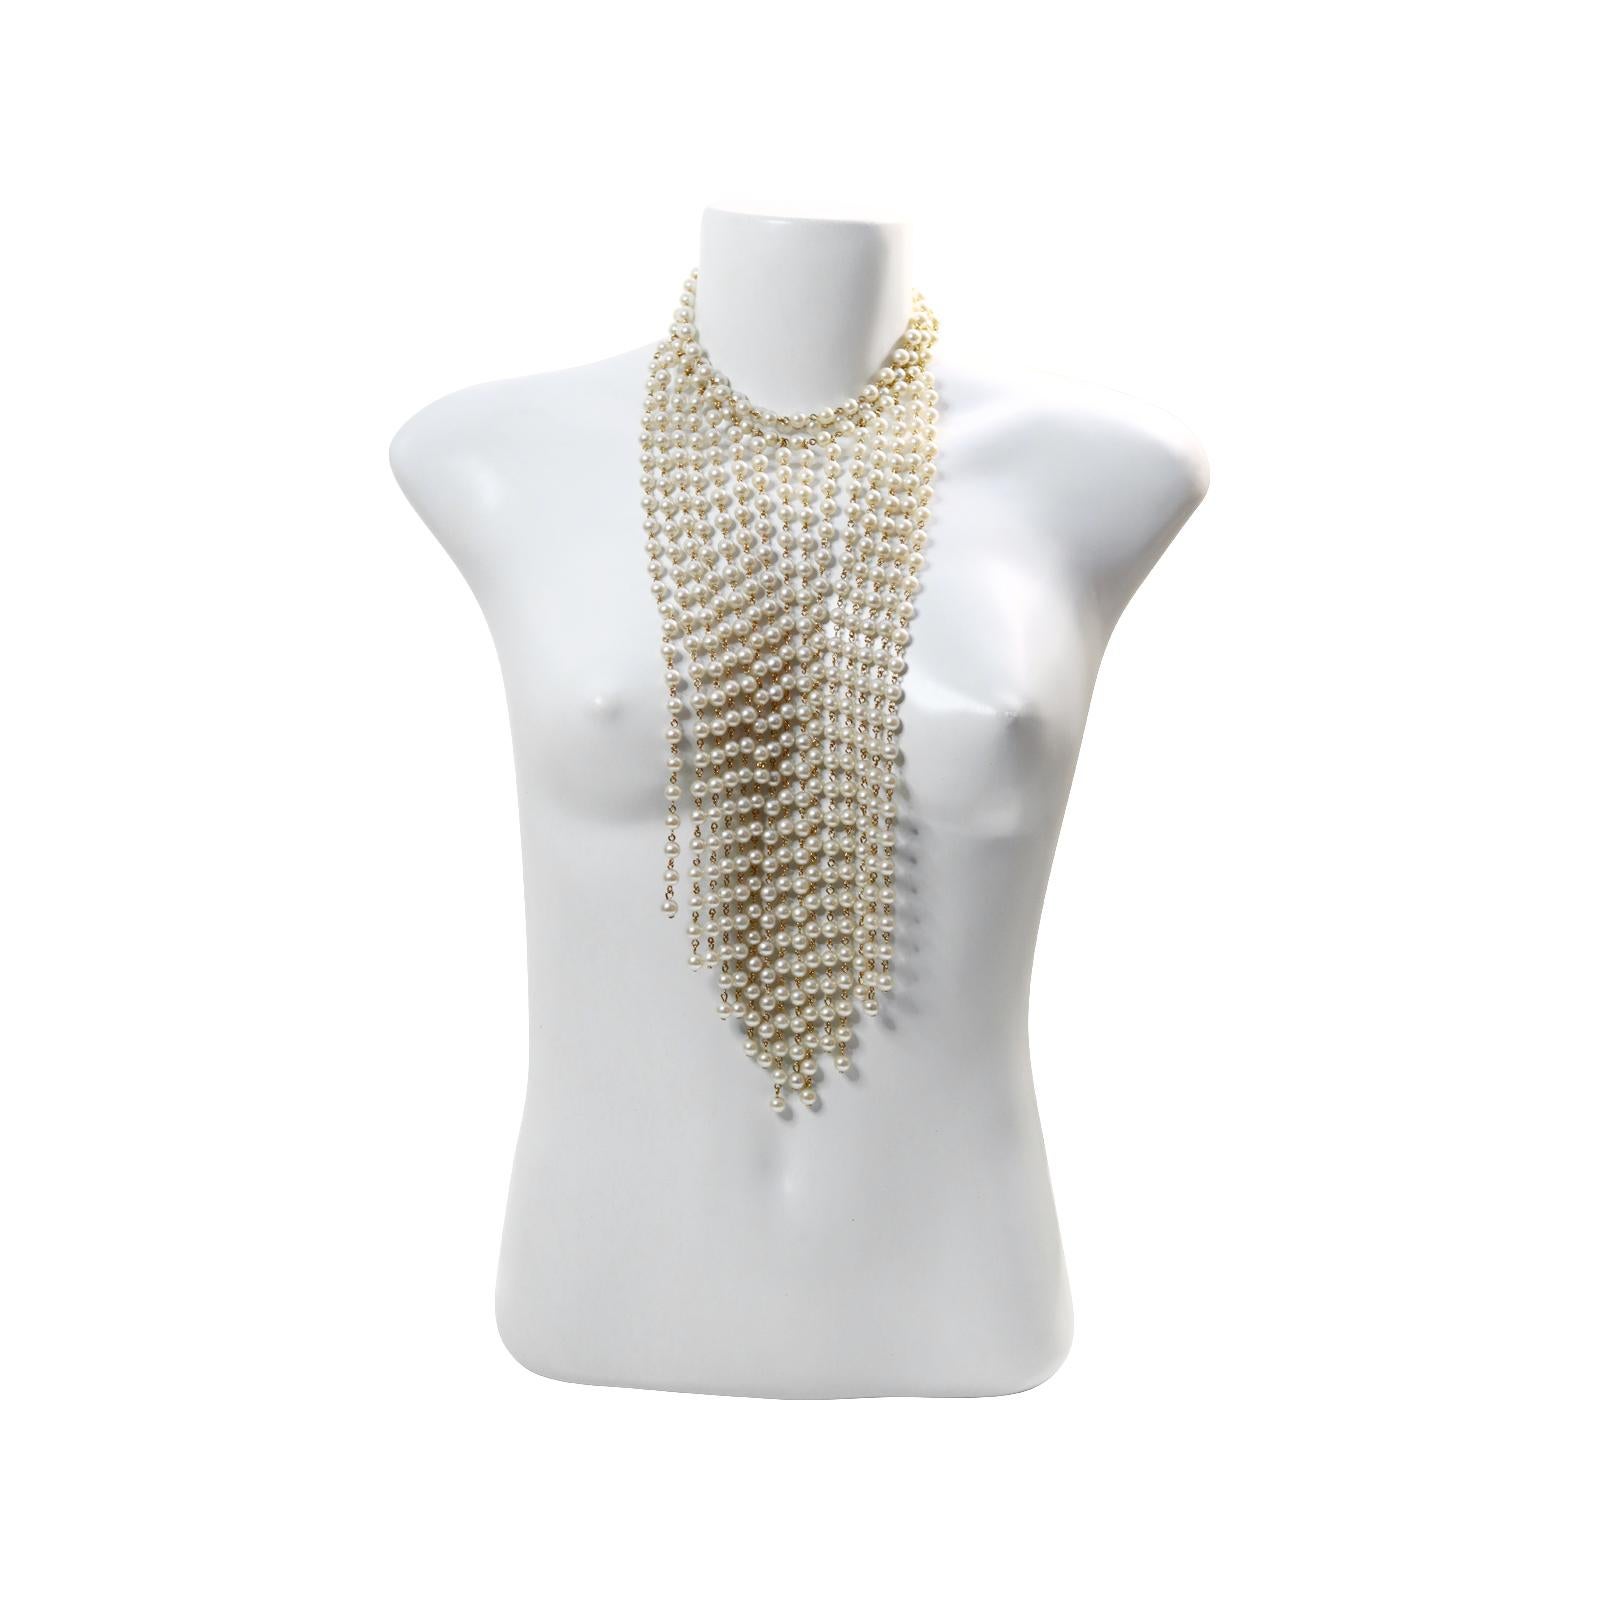 Vintage Faux Pearl Choker mit Cascading Long Necklace CIRCA 1990s. Diese spektakuläre Halskette besteht aus einem 3-reihigen Choker, an dem viele baumelnde Reihen vertikal hängen, wie auf den Fotos zu sehen ist, um eine Kaskade zu erzeugen.  Würde